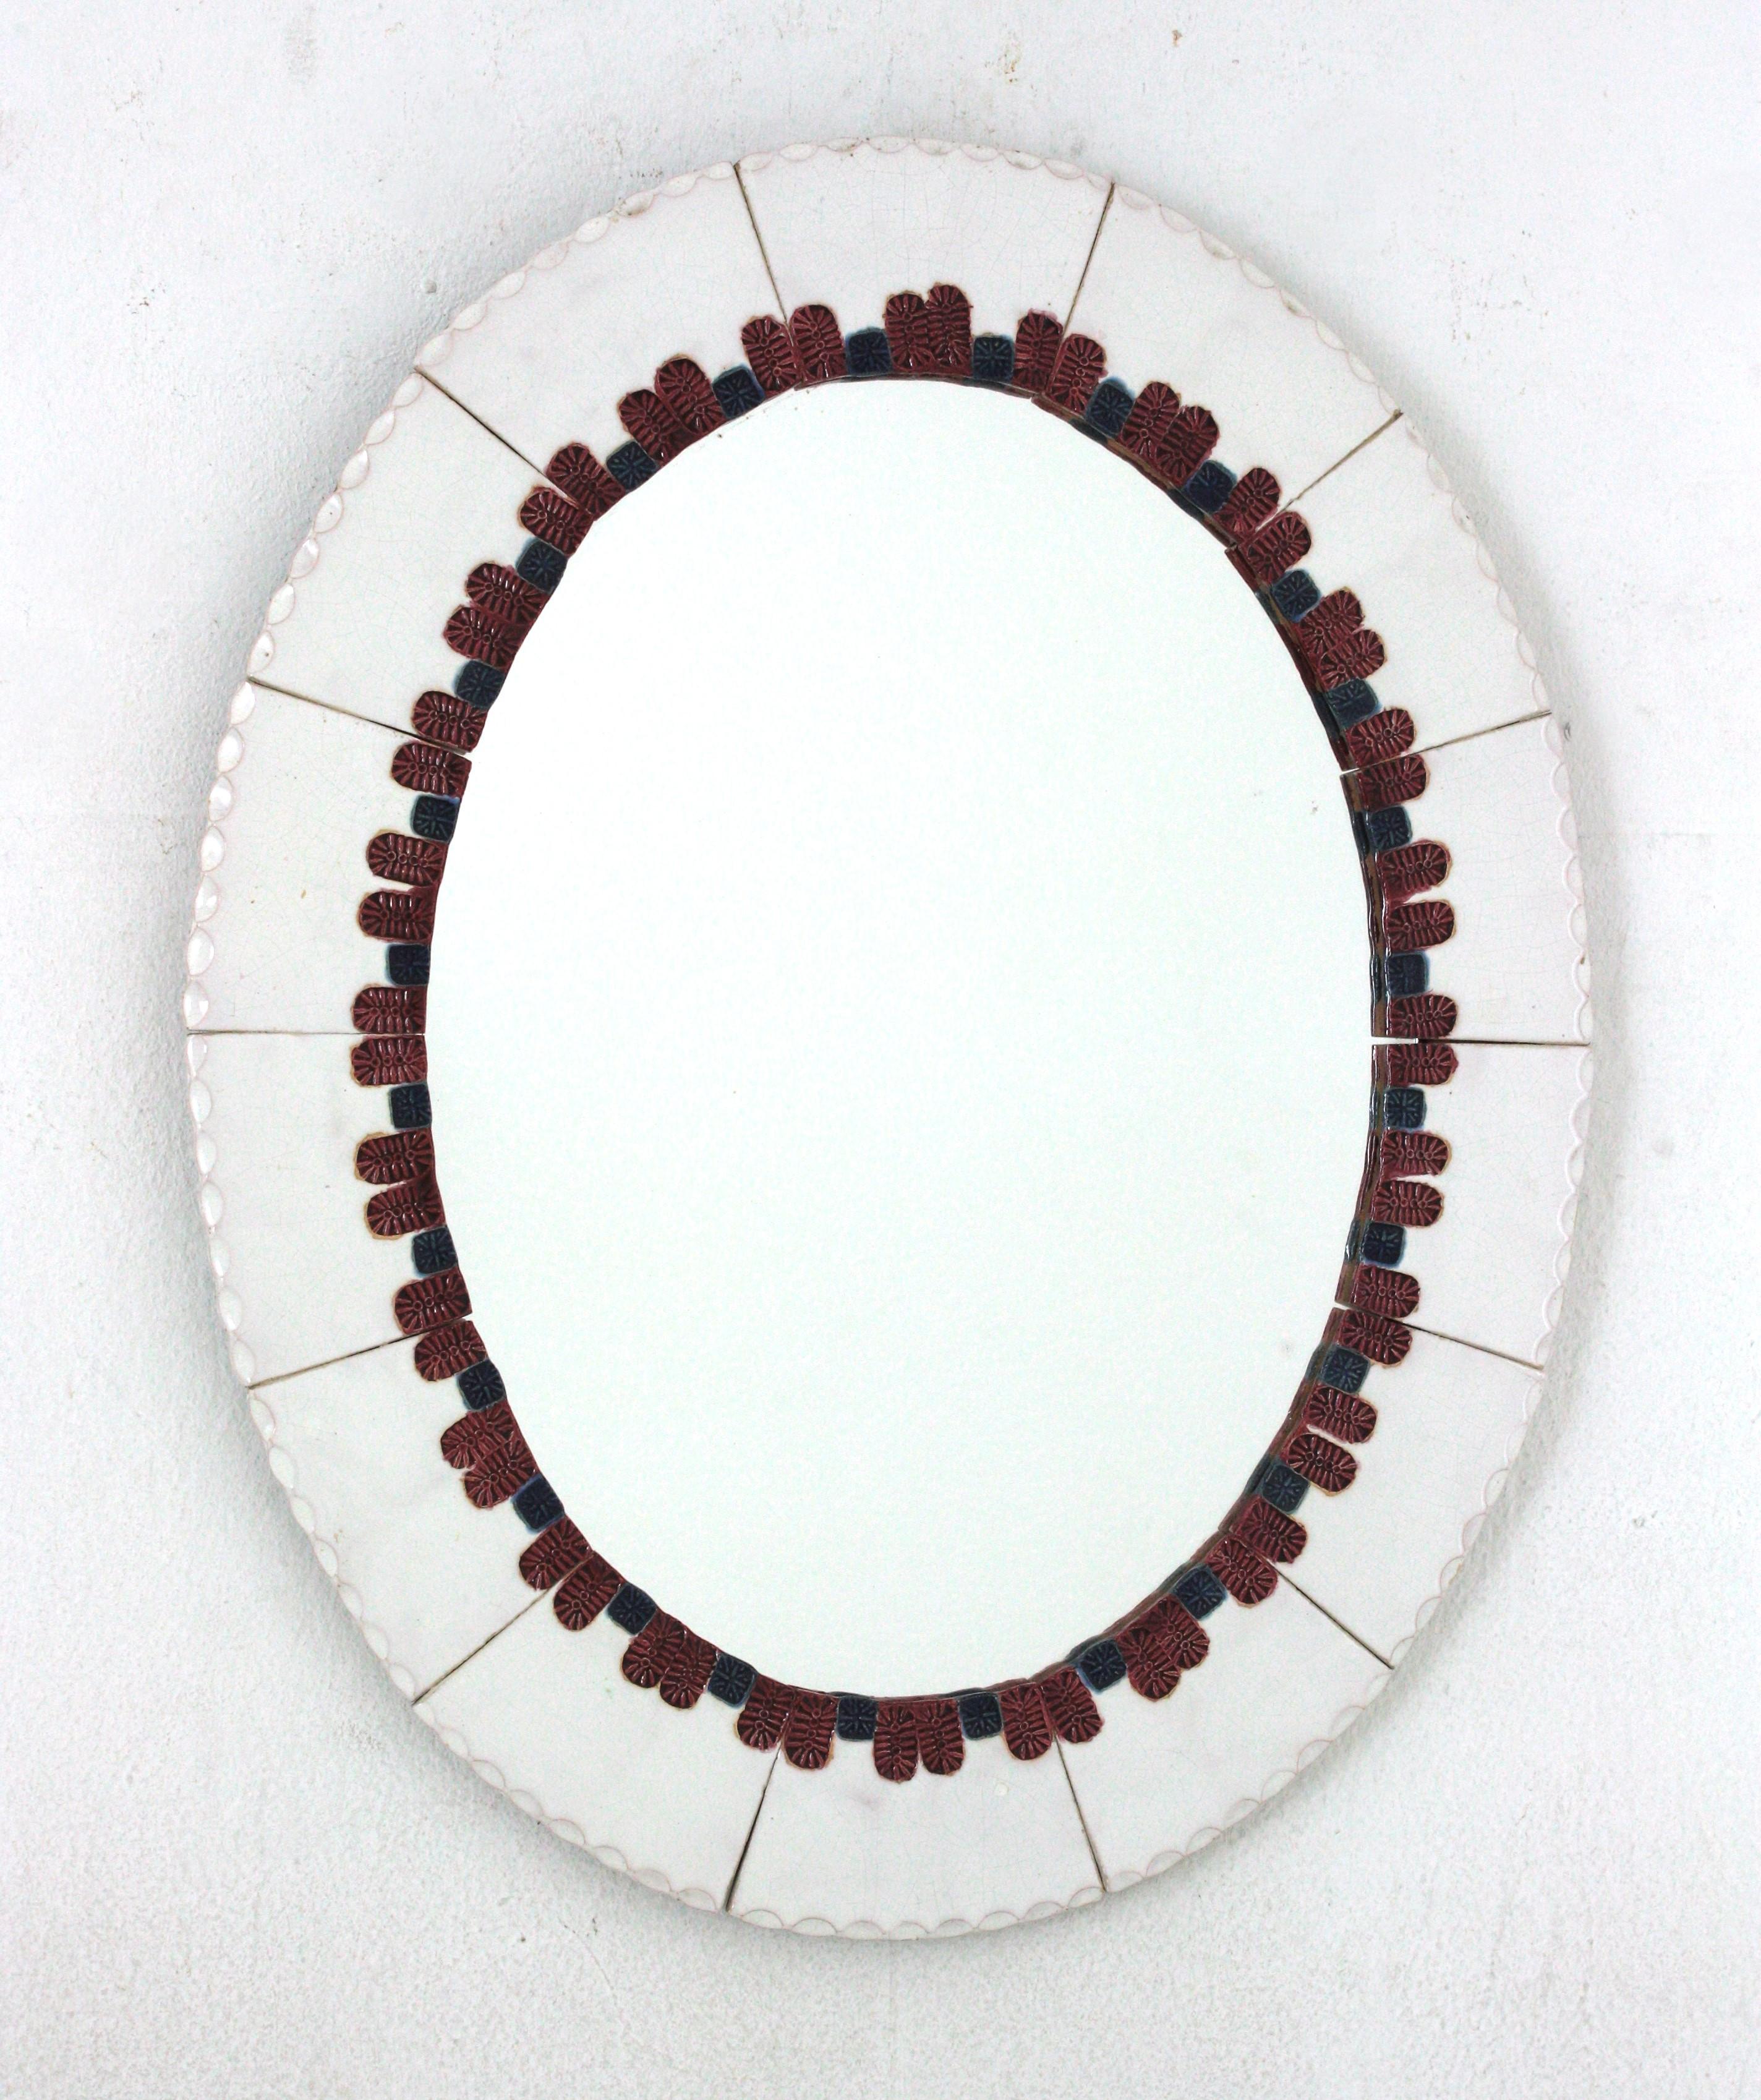 Auffälliger Mid-Century Modern Keramikspiegel. Hergestellt in Spanien, 1960er Jahre.
Ovale Form und bunter Rahmen.
Sie besteht aus glasierten Keramikfliesen in weißer Farbe. Ein dekoratives Muster in Blau und Rosarot umgibt den Glasspiegel.
Dieser